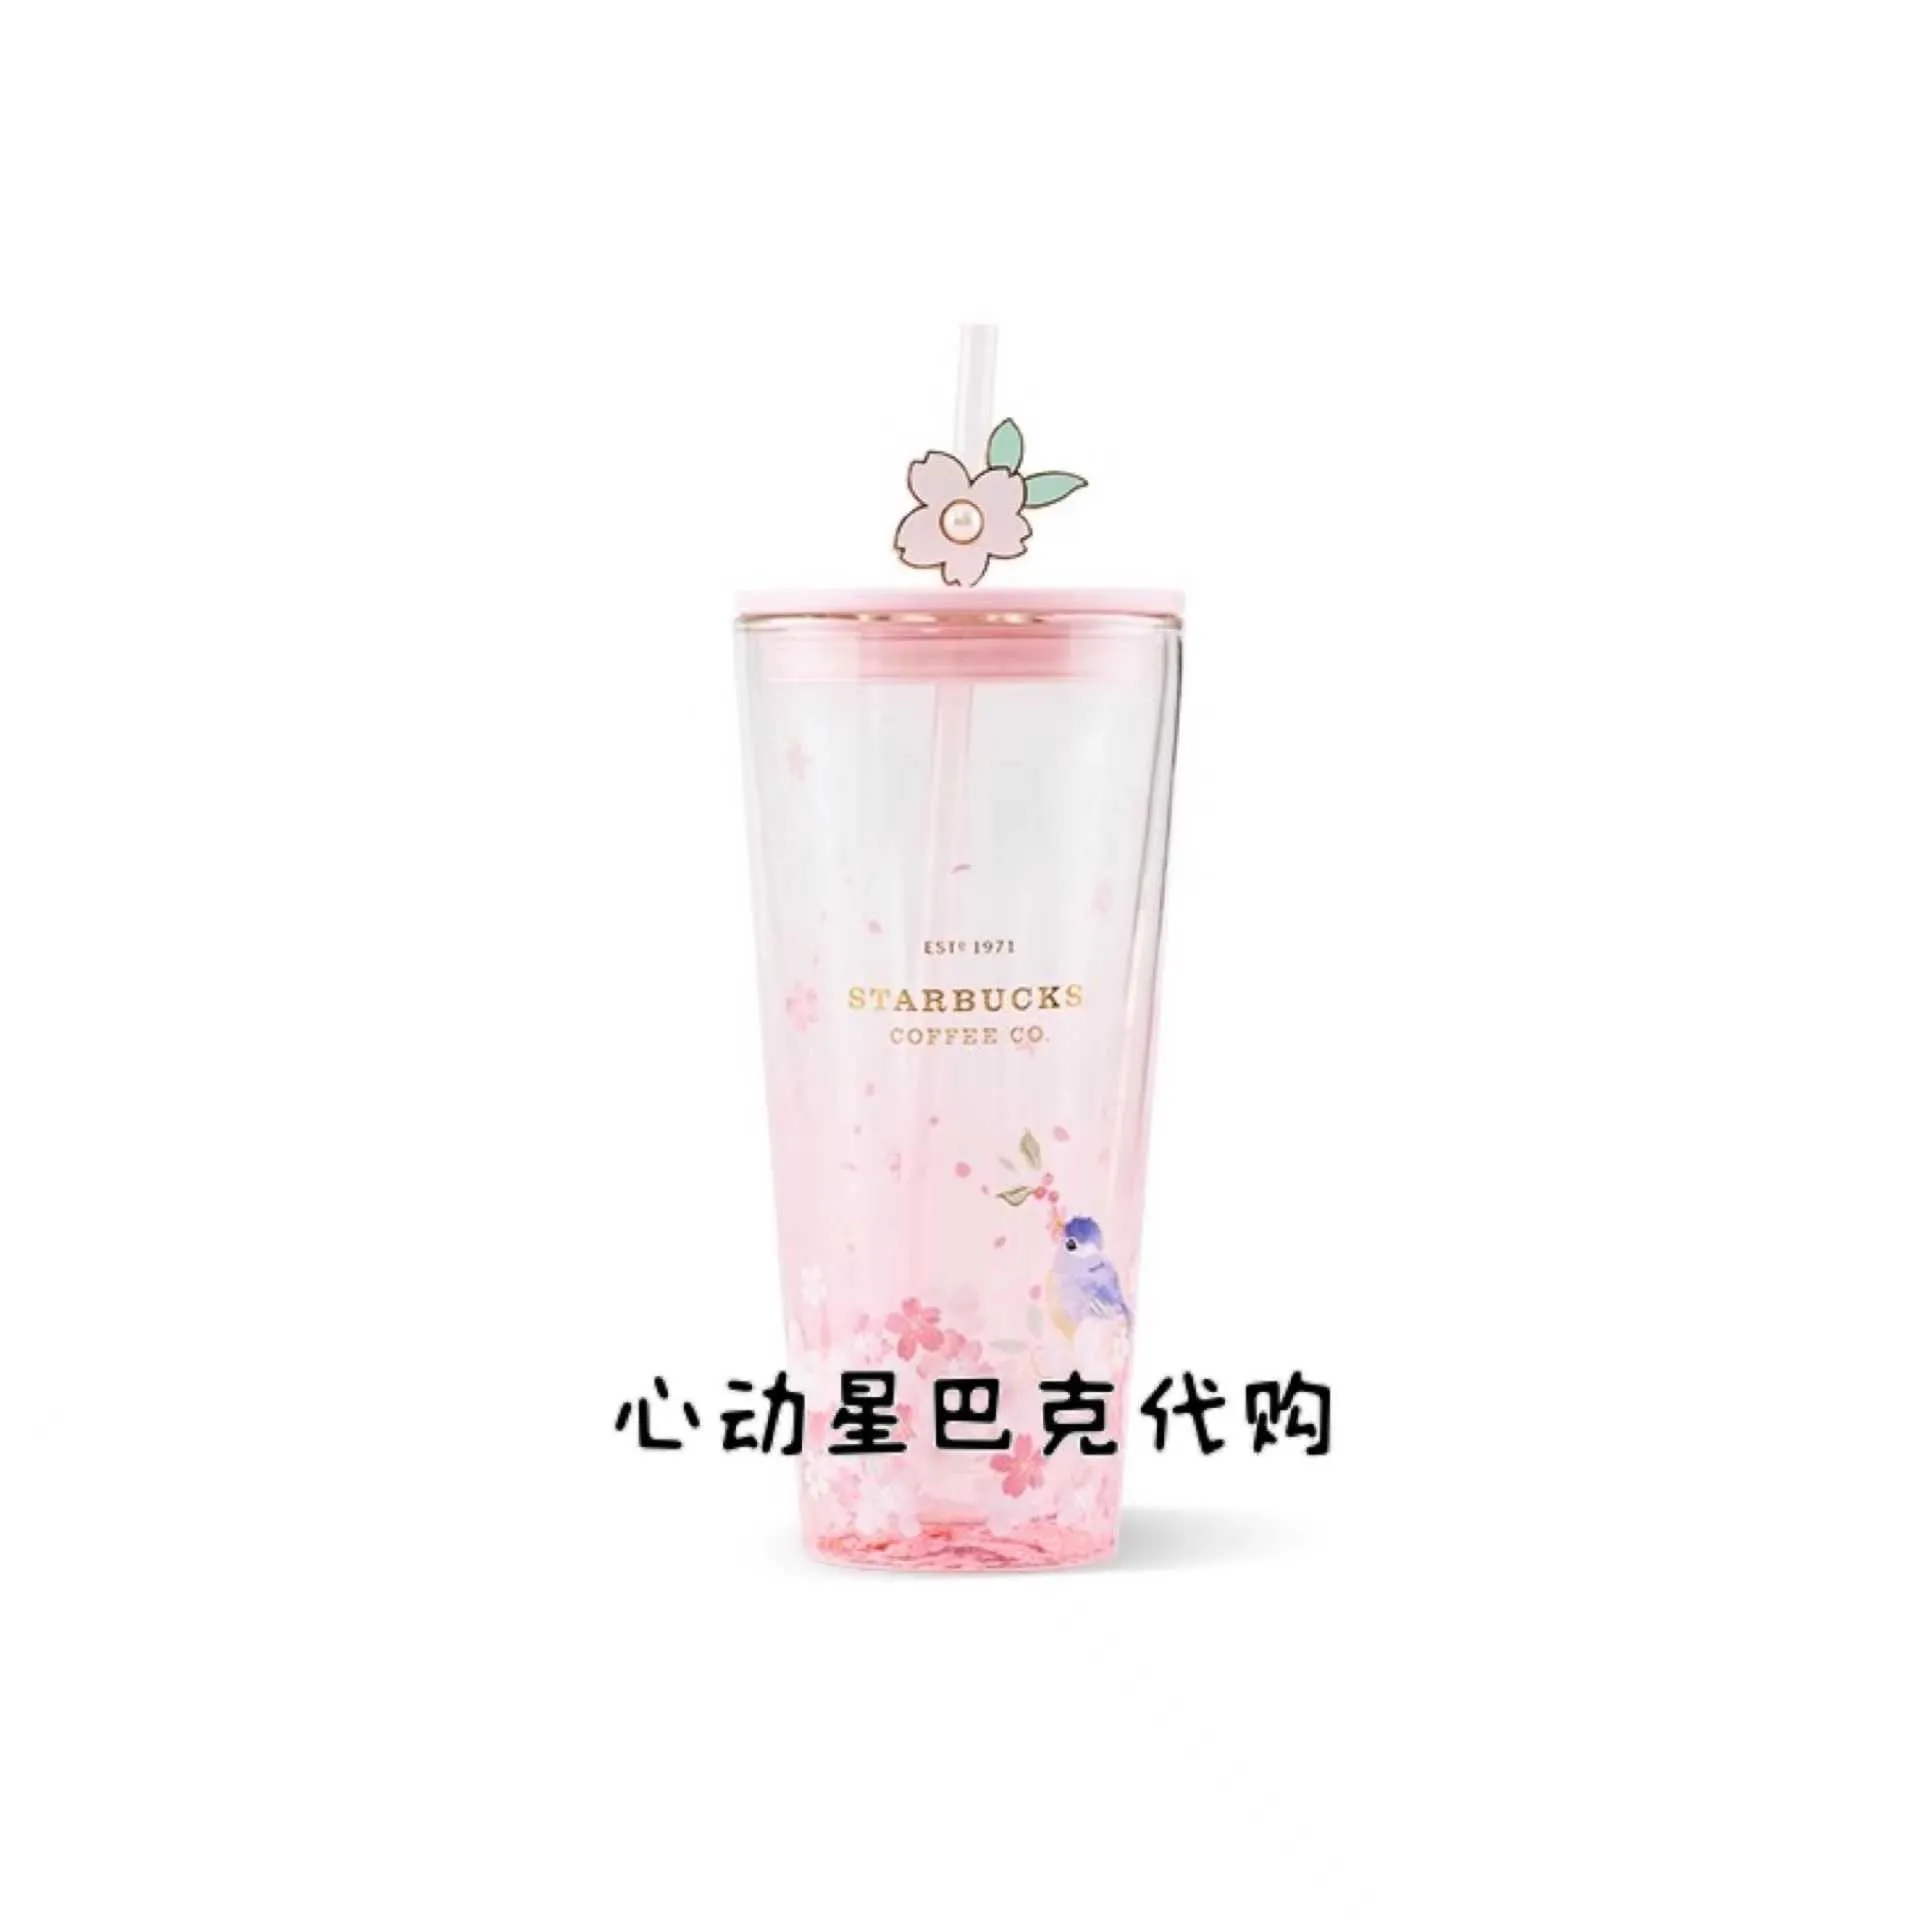 スターバックスカップ 2022 桜の季節 591ml 鳥のさえずりと花の香り ピンク透明二重ガラス ストローカップ